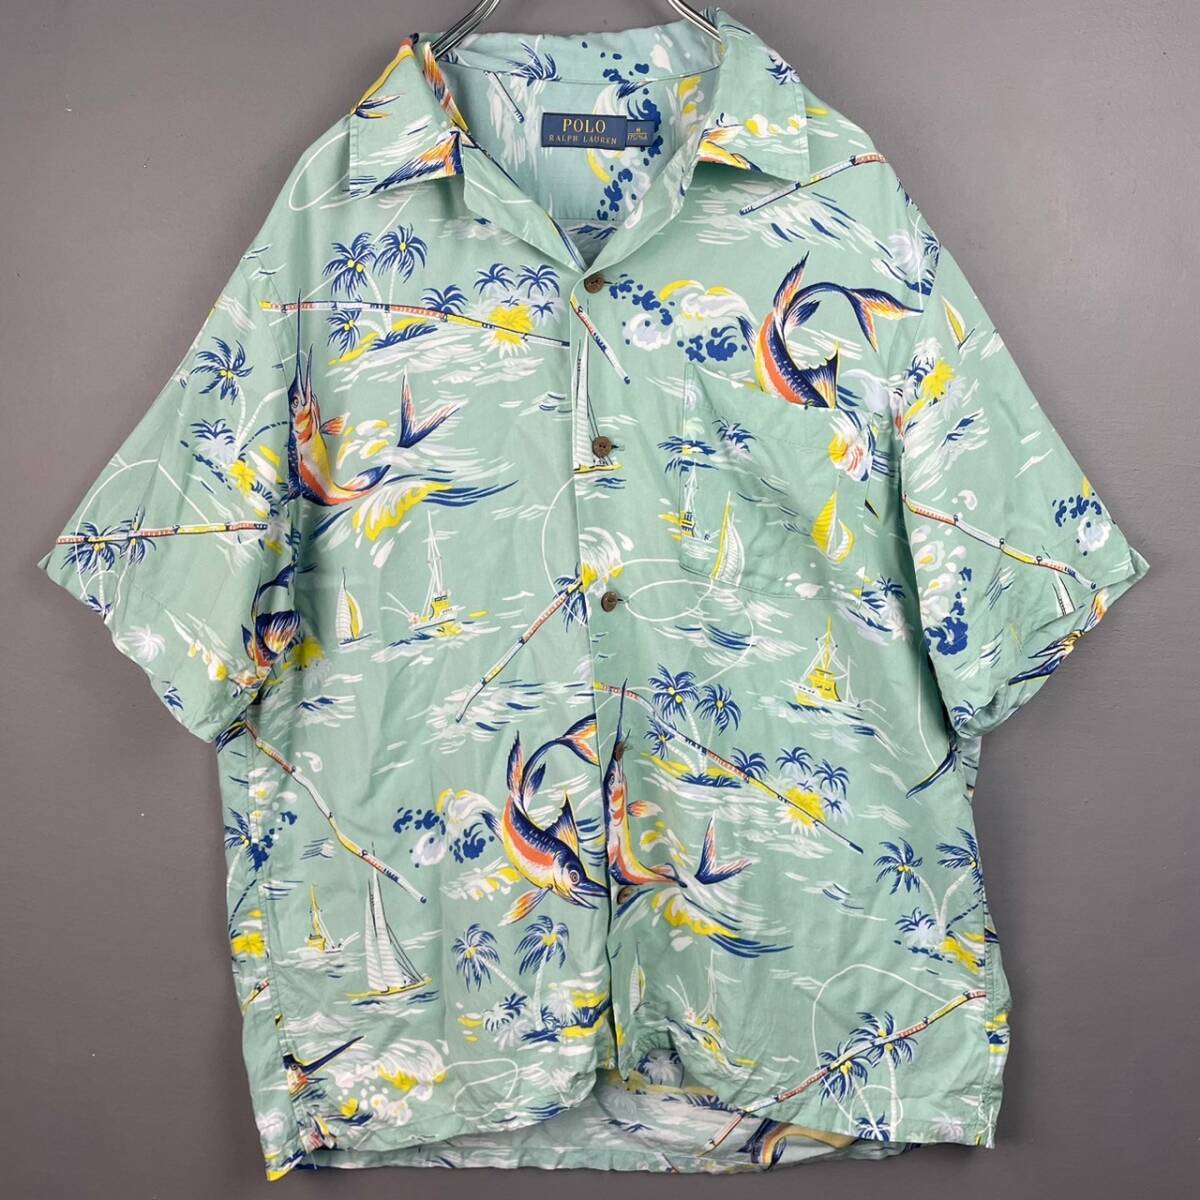 Wm705 стандартный товар POLO RALPH LAUREN короткий рукав Hawaiian * гавайская рубашка открытый цвет . воротник марлин искусственный шелк мужской свободно 